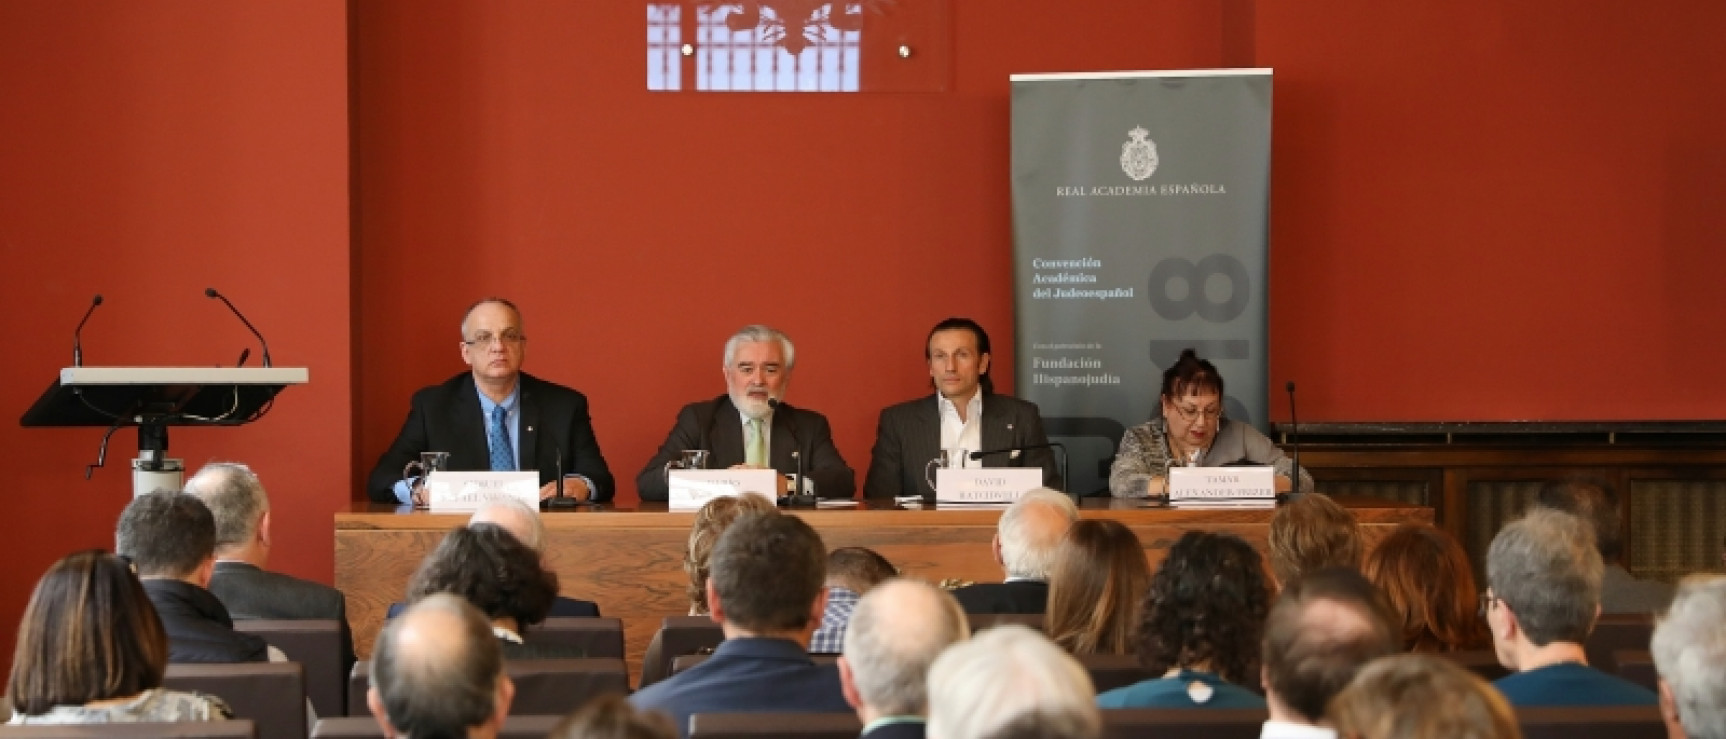 Presentación a los medios de comunicación del acuerdo de constitución de la Academia del Judeoespañol.